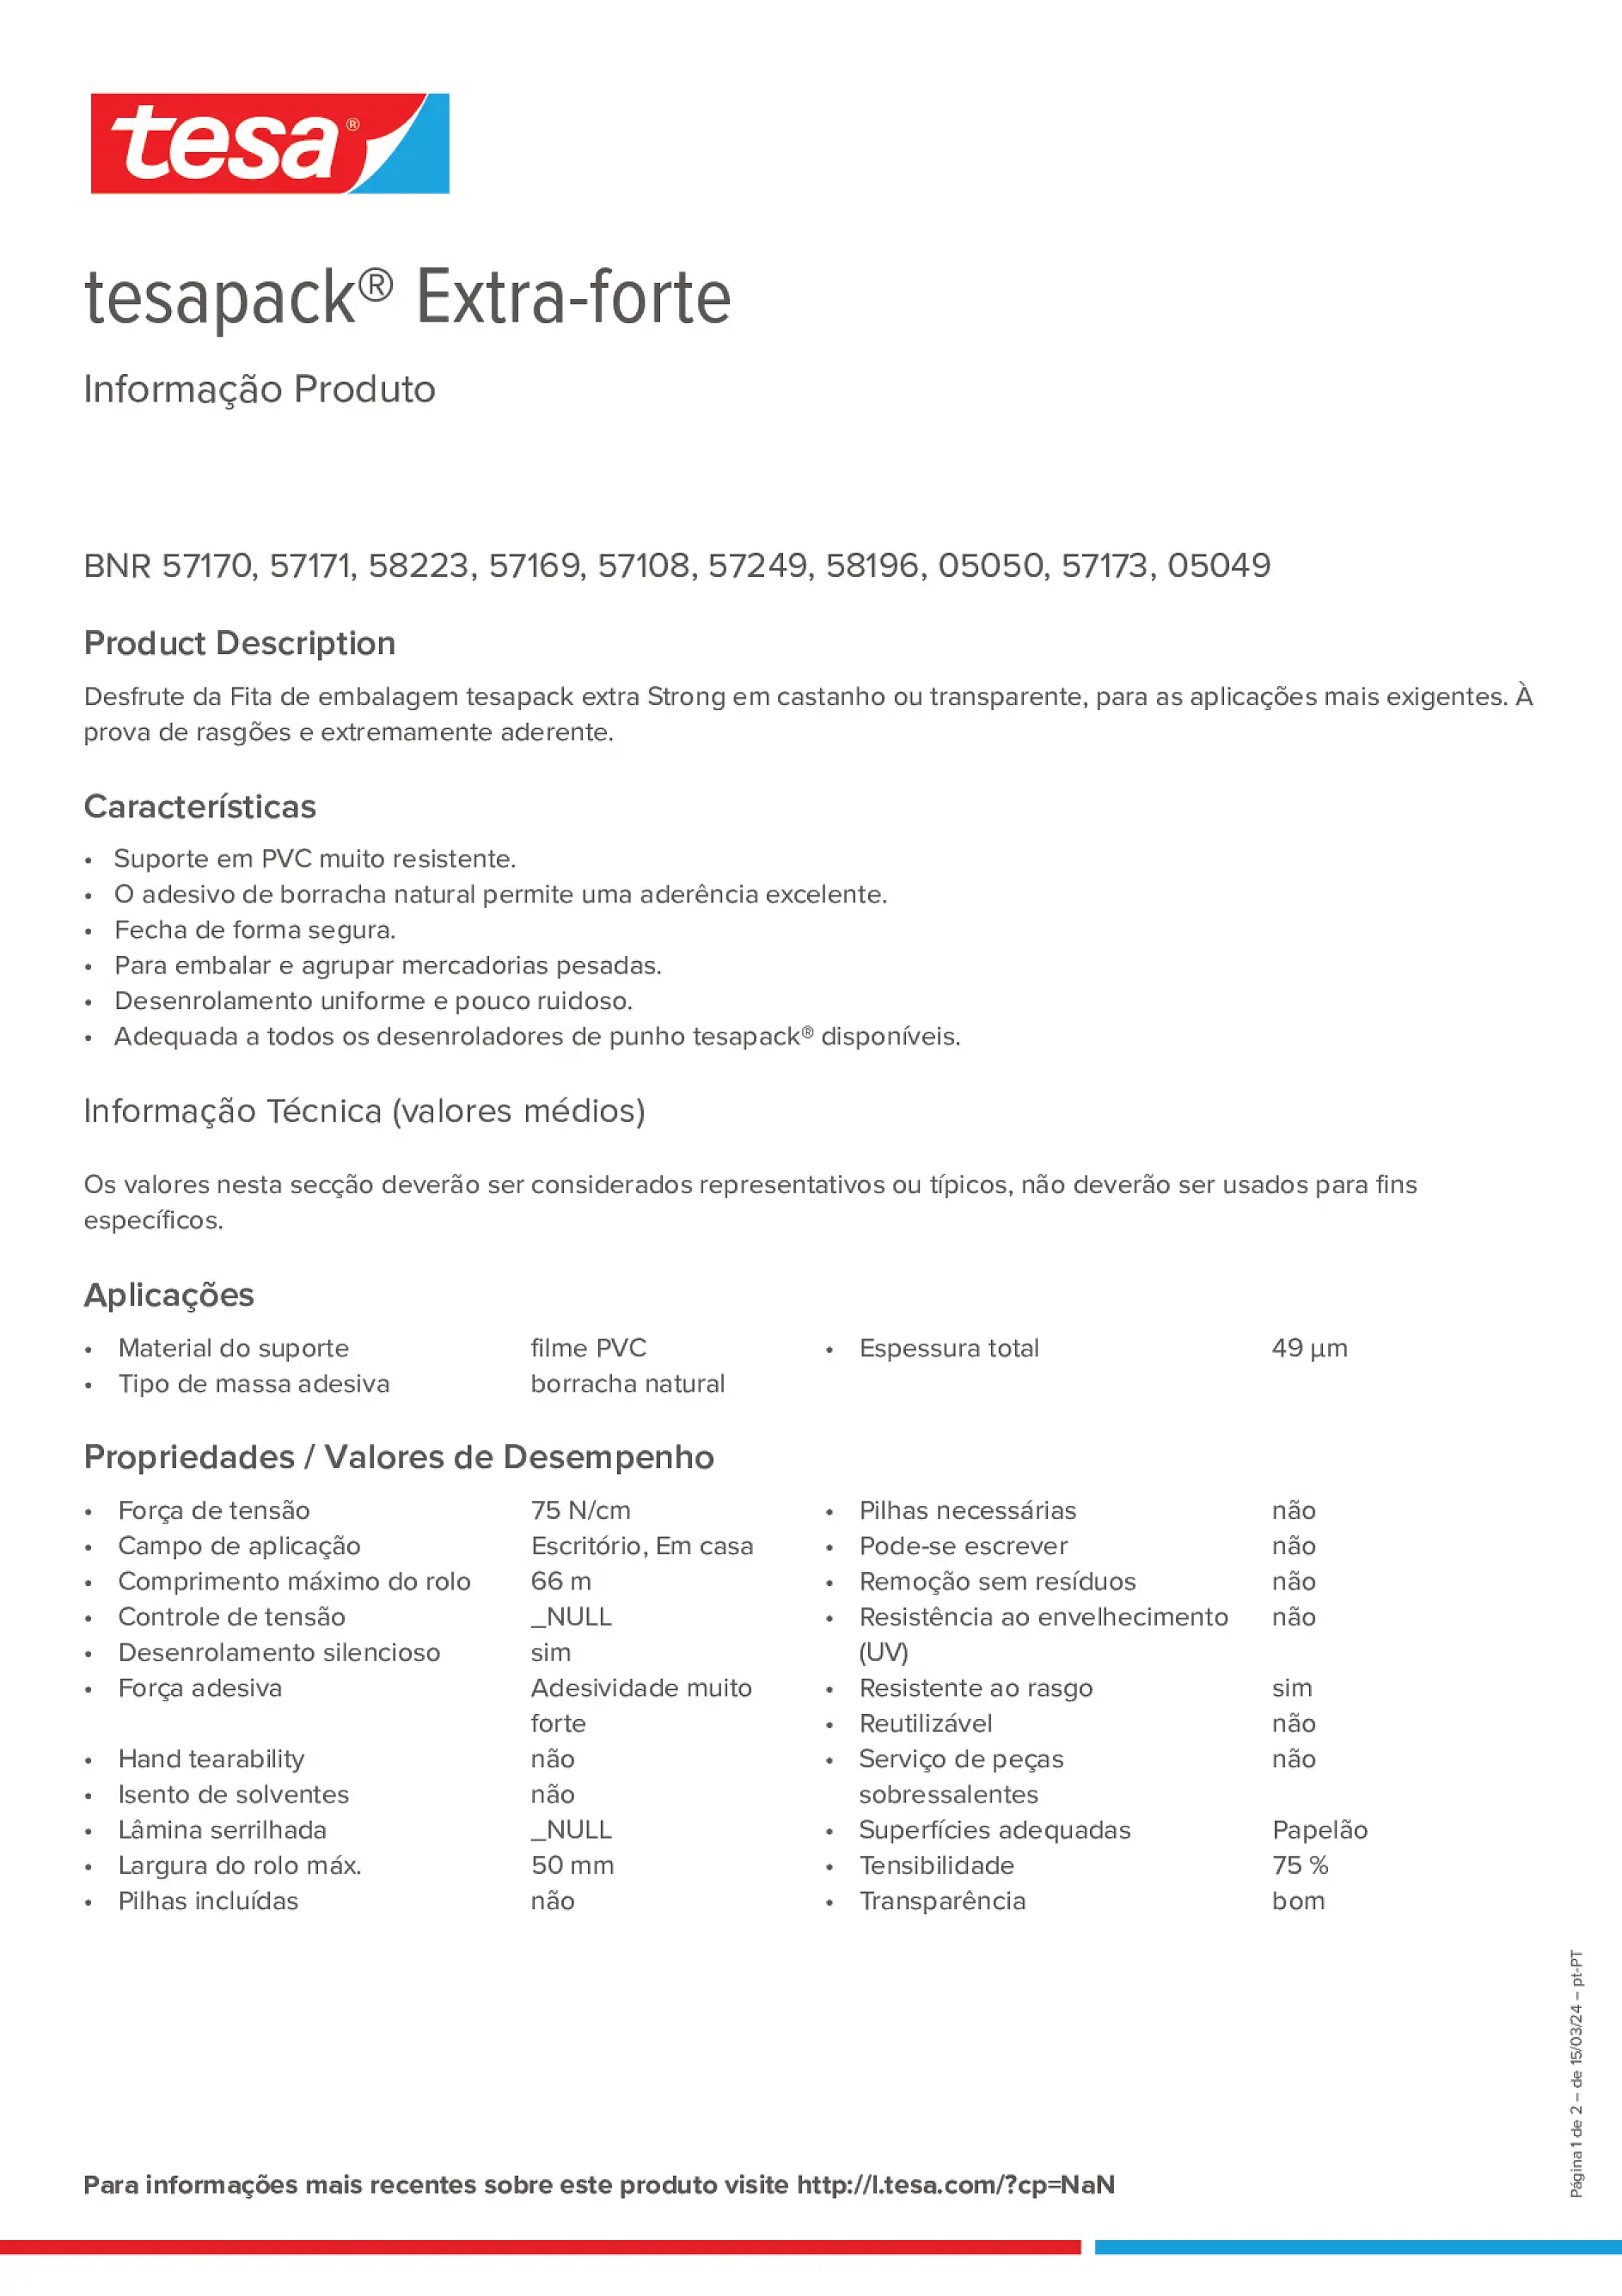 Product information_tesapack® 57249_pt-PT